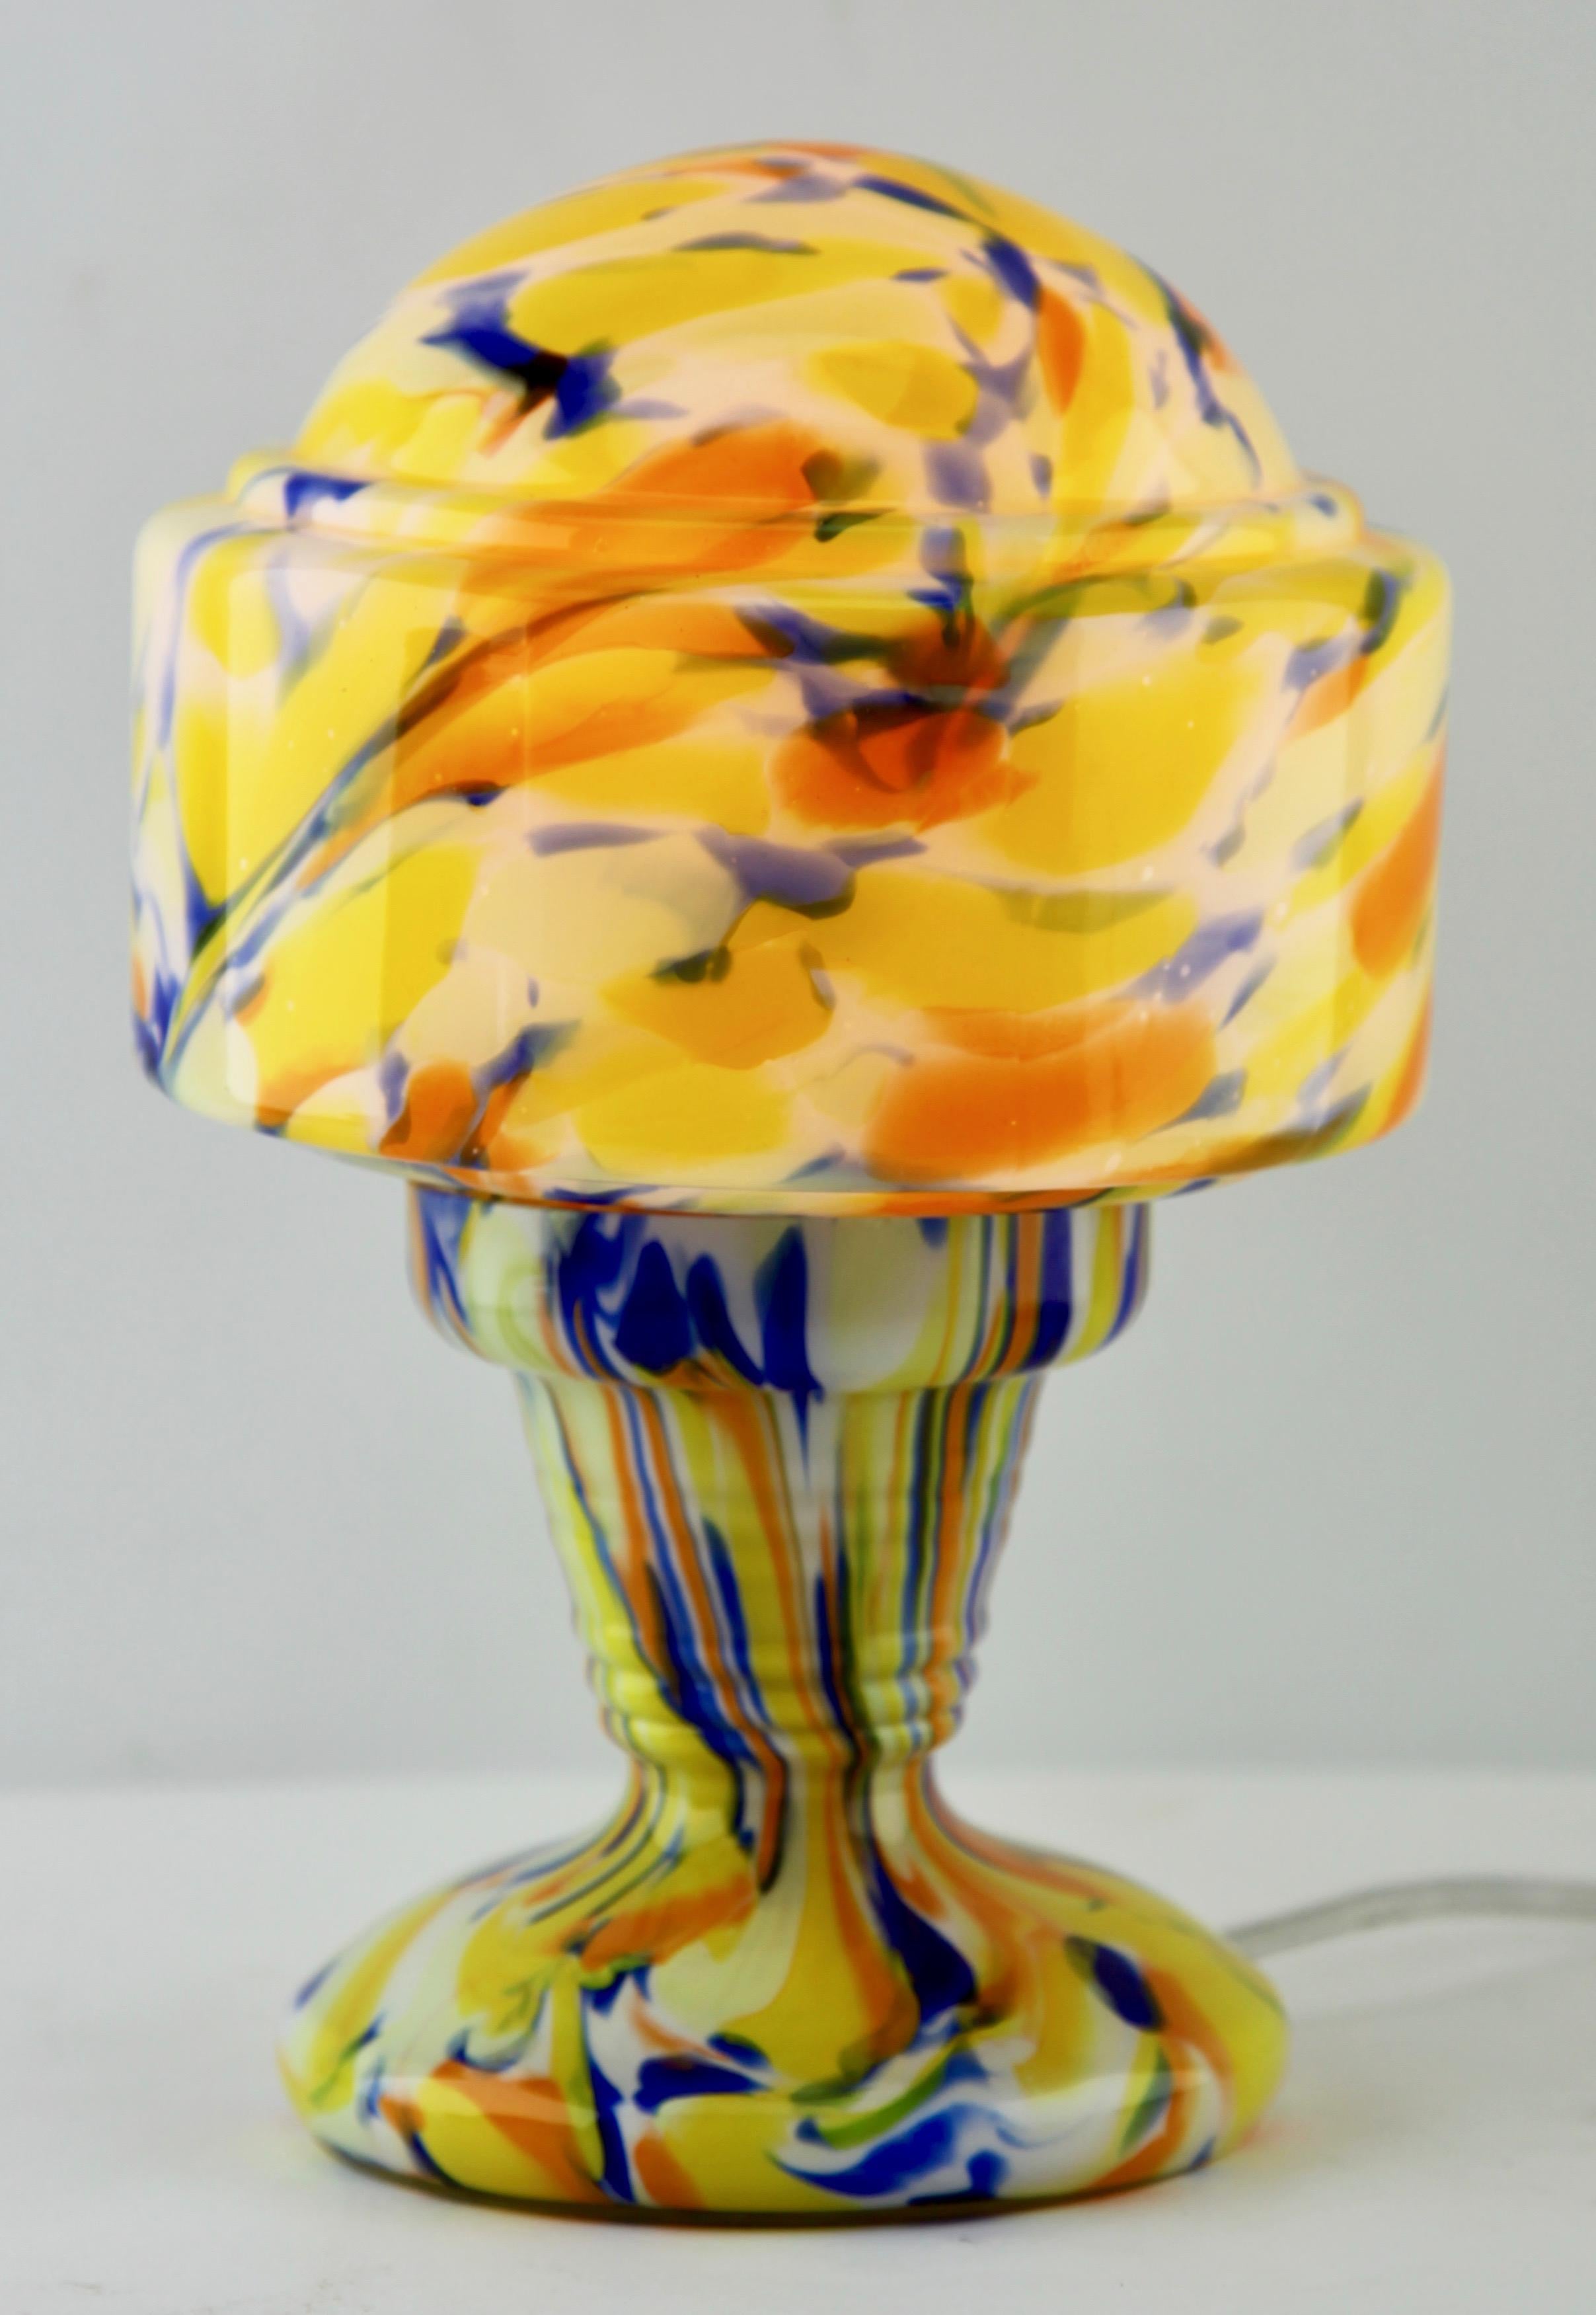 Étonnante lampe de table à éclaboussures aux couleurs multicolores, en verre éclaboussé soufflé à la main Lampe de style Art déco.
Cette lampe est la lampe Originel utilisée dans le livre Voir l'image

Et sans danger pour l'utilisation dans le monde